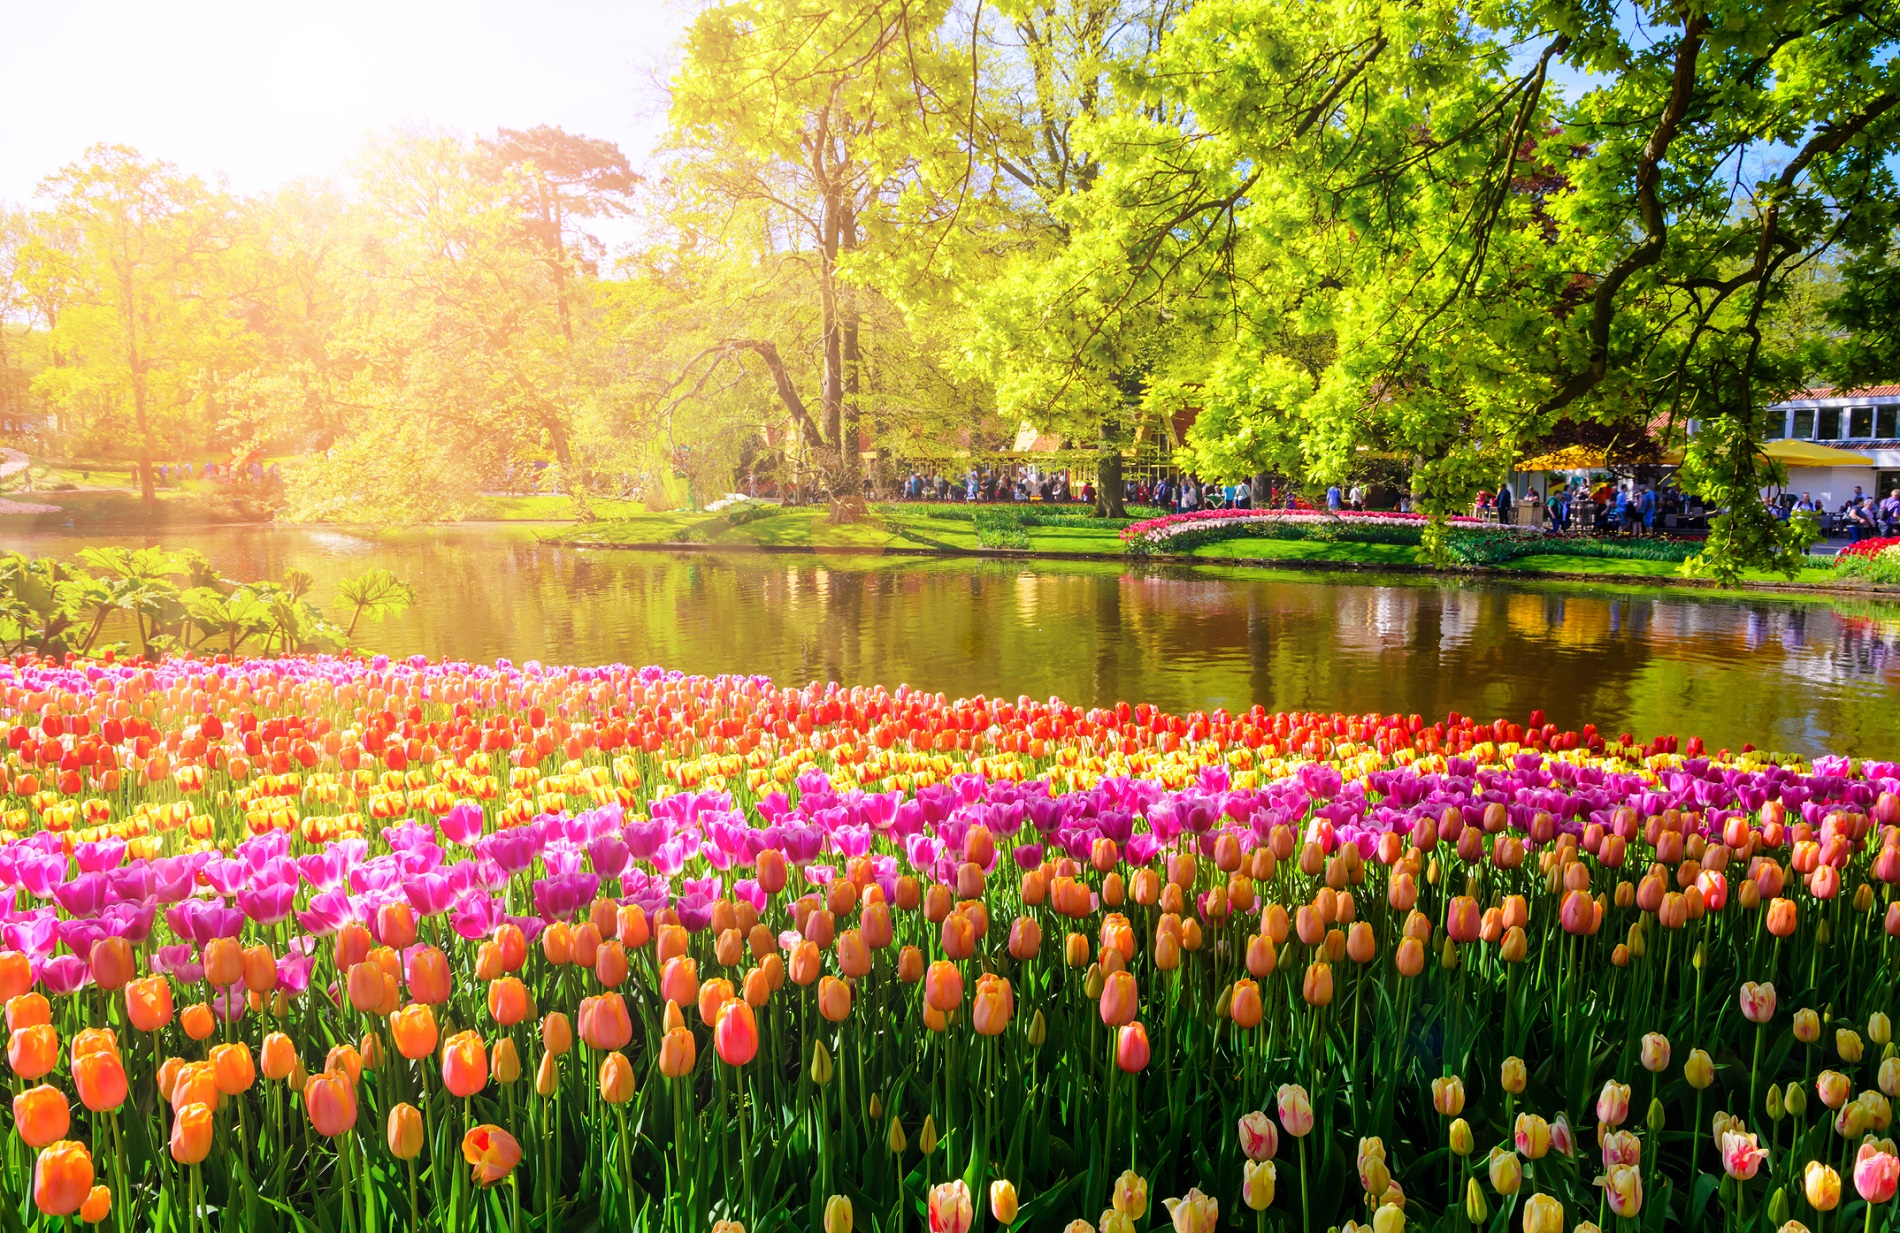 Colorful blooming flowers in Keukenhof park in Netherlands, Europe.